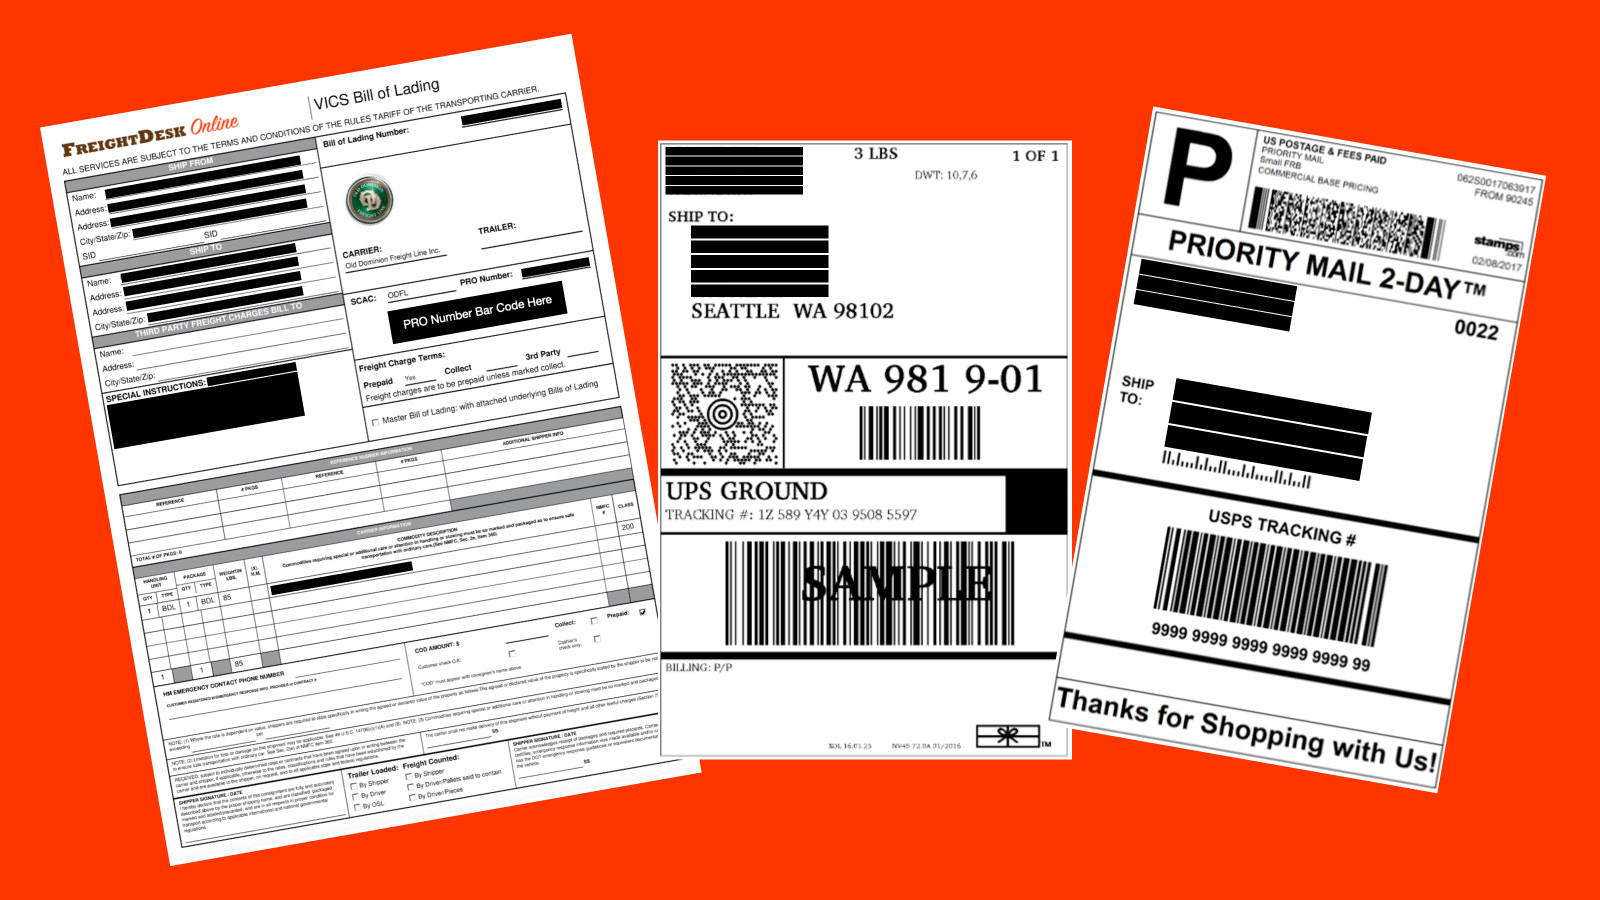 Exemplos de Etiquetas e Documentação de Envio do FreightDesk Online